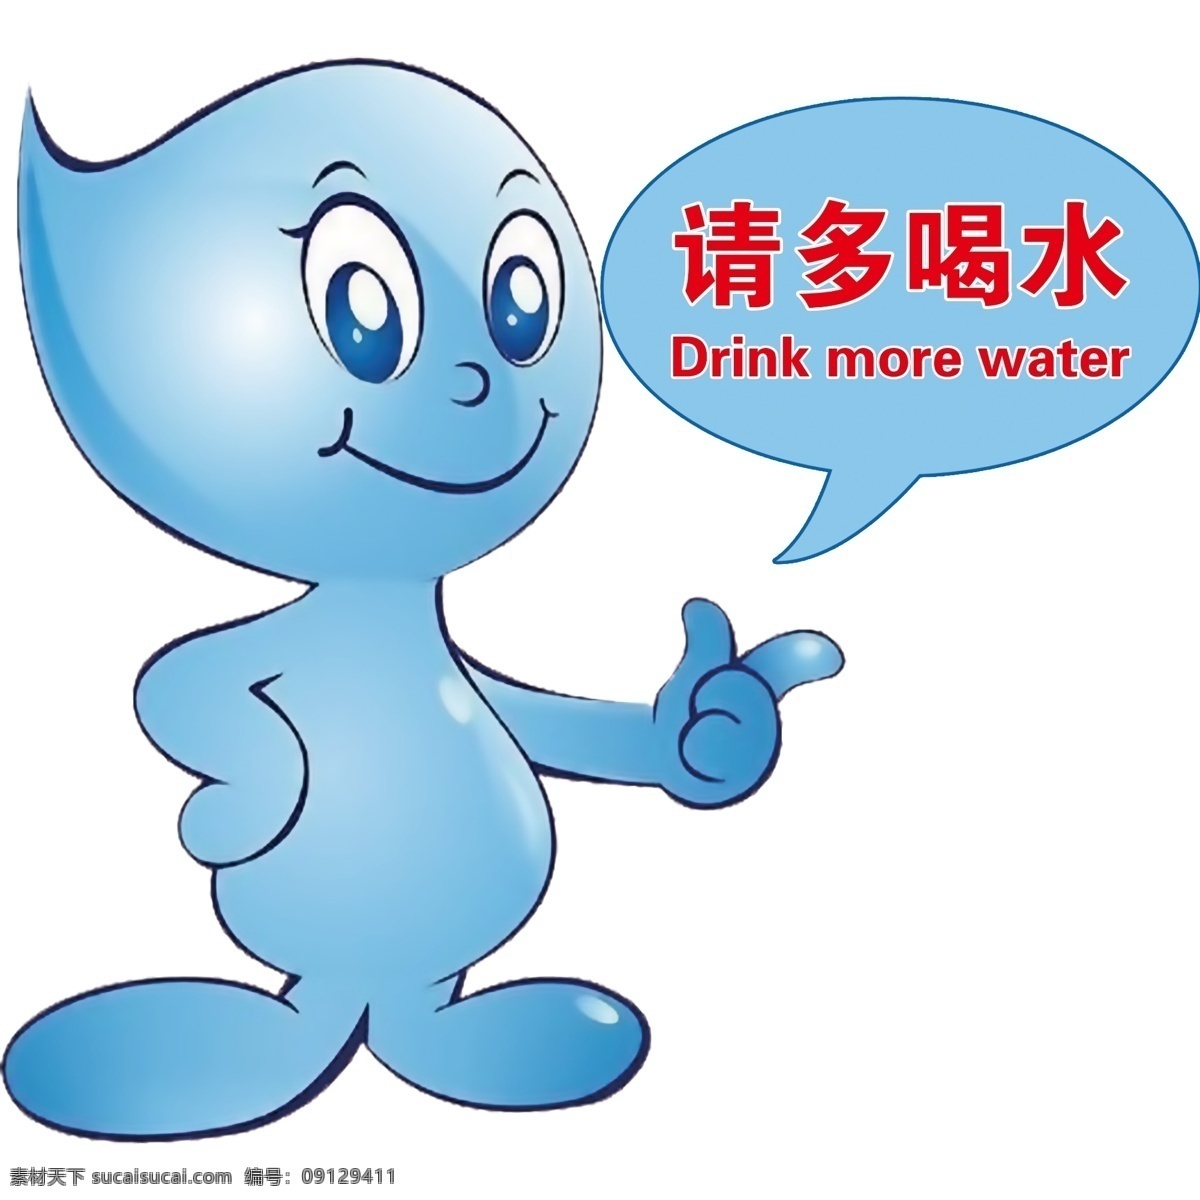 请多喝水 水 水滴 节约用水 蓝色 卡通 渐变